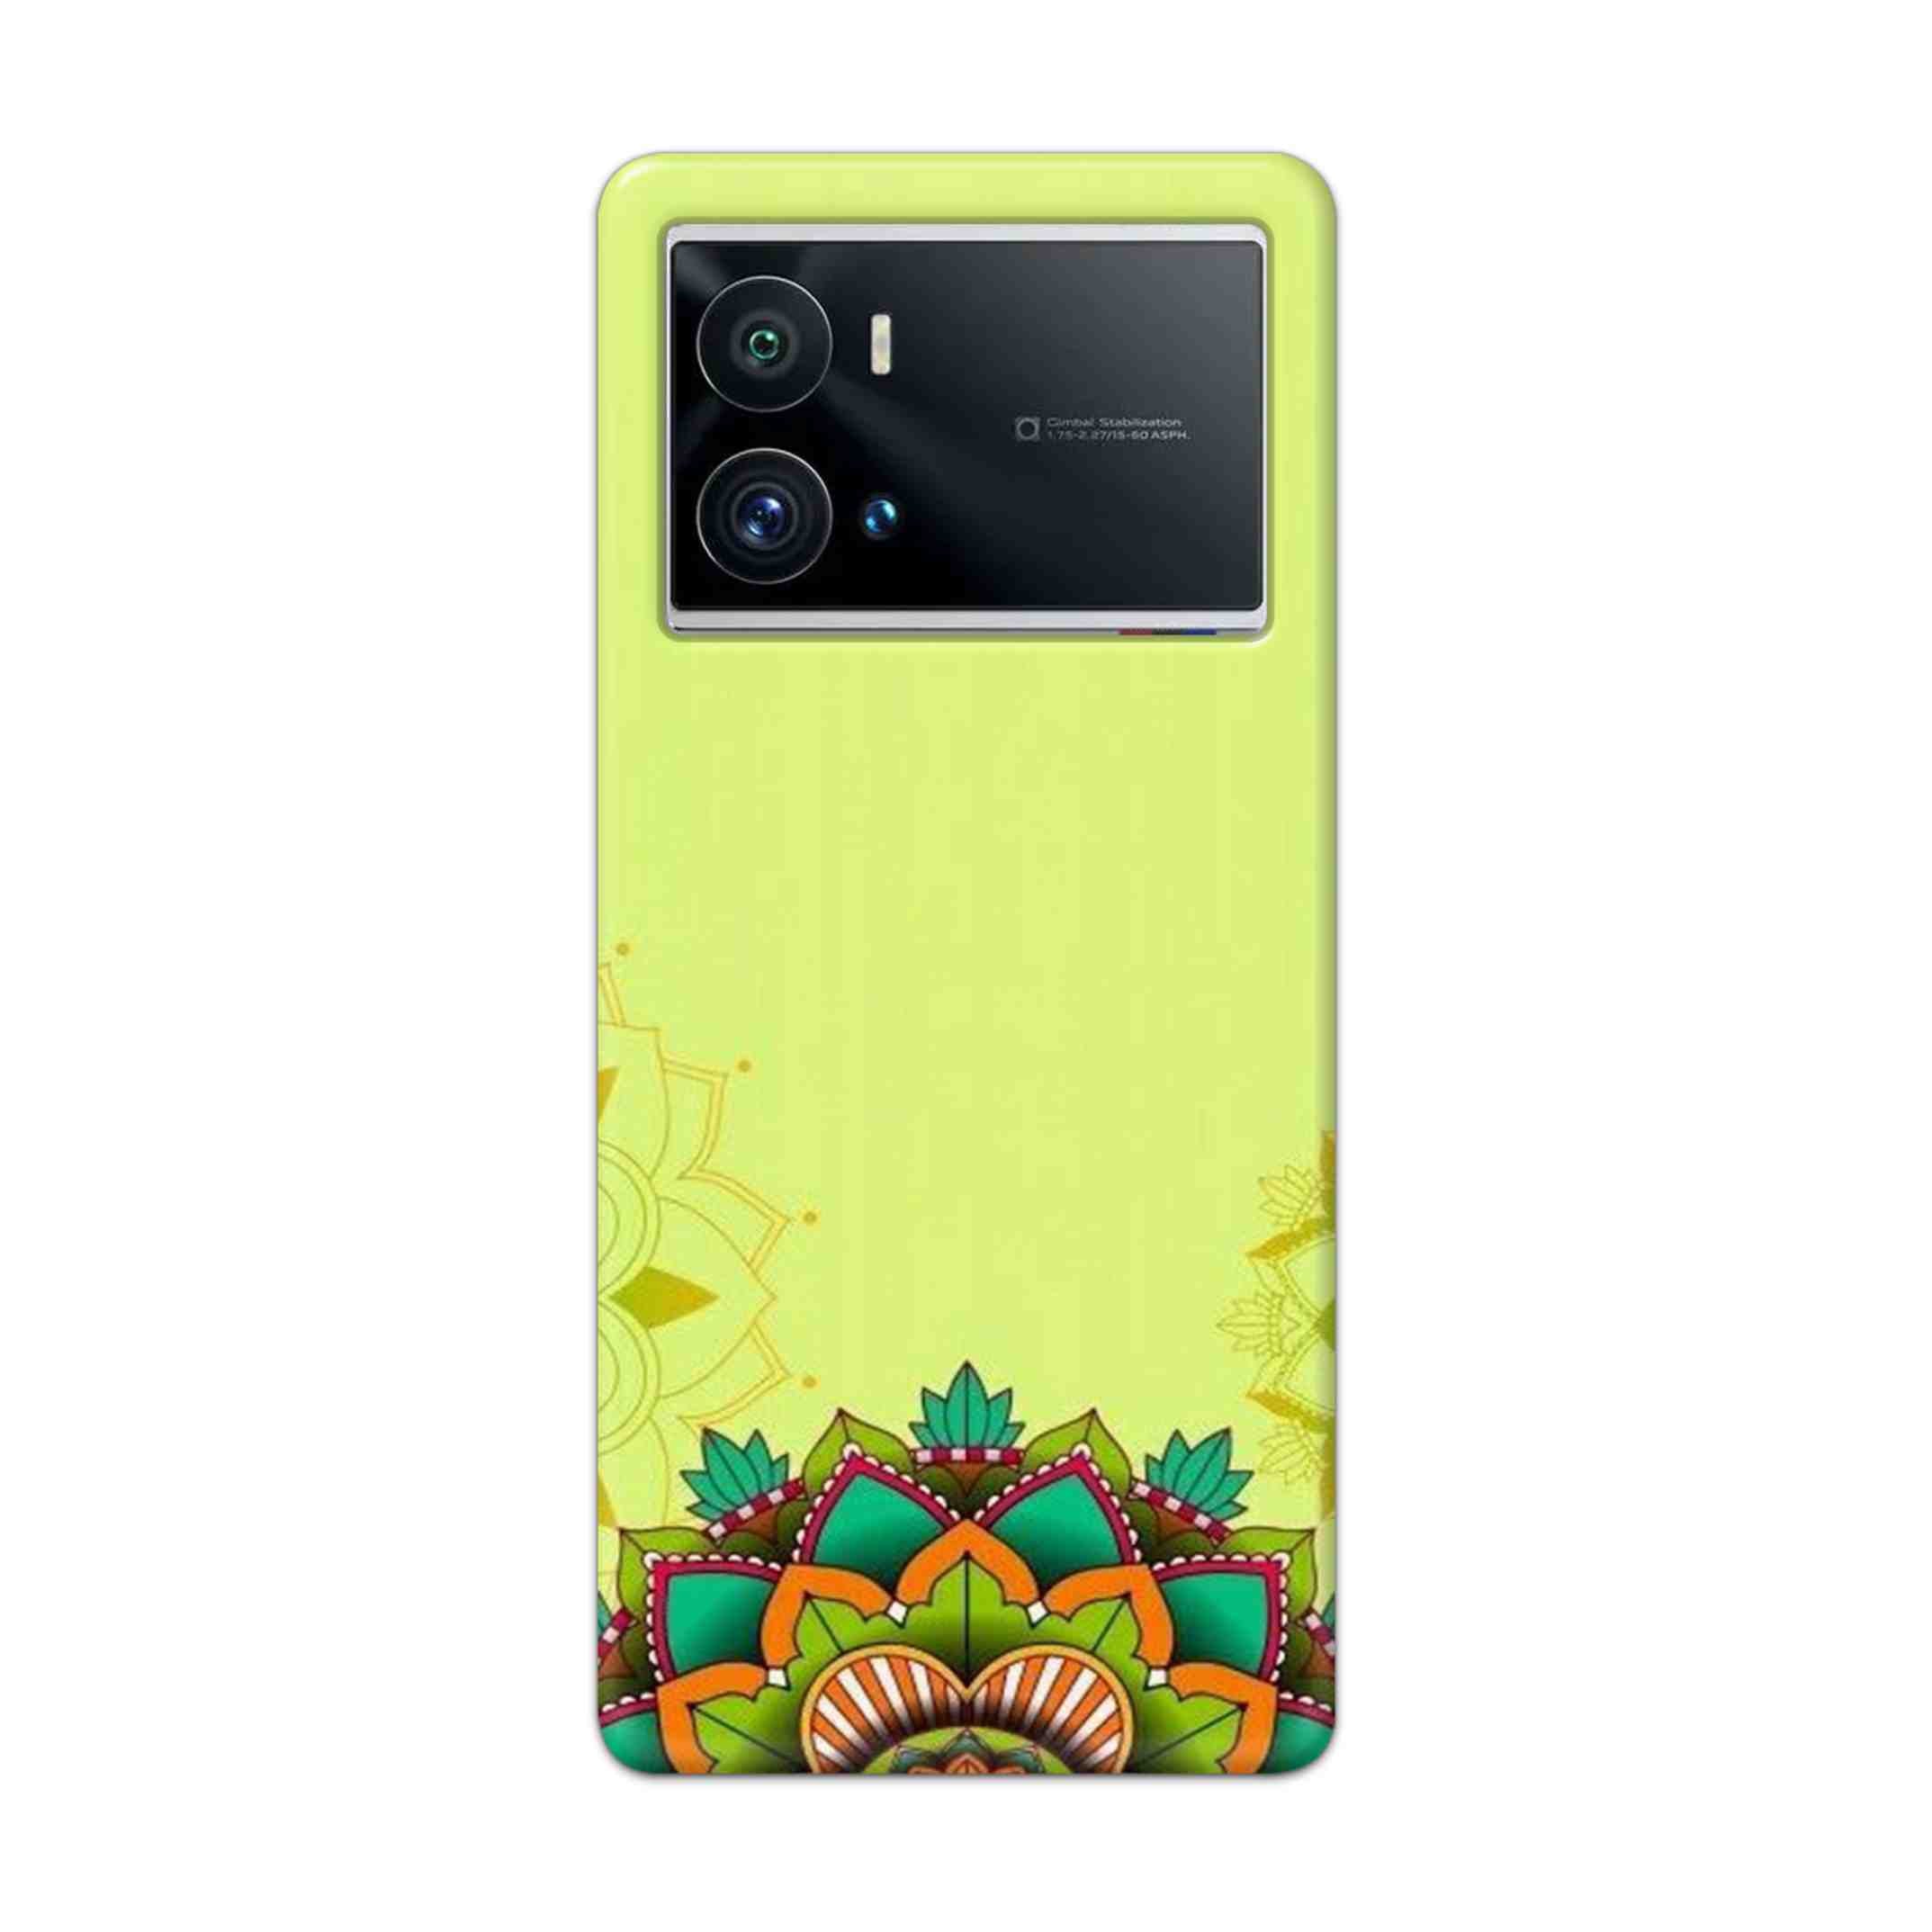 Buy Flower Mandala Hard Back Mobile Phone Case Cover For iQOO 9 Pro 5G Online